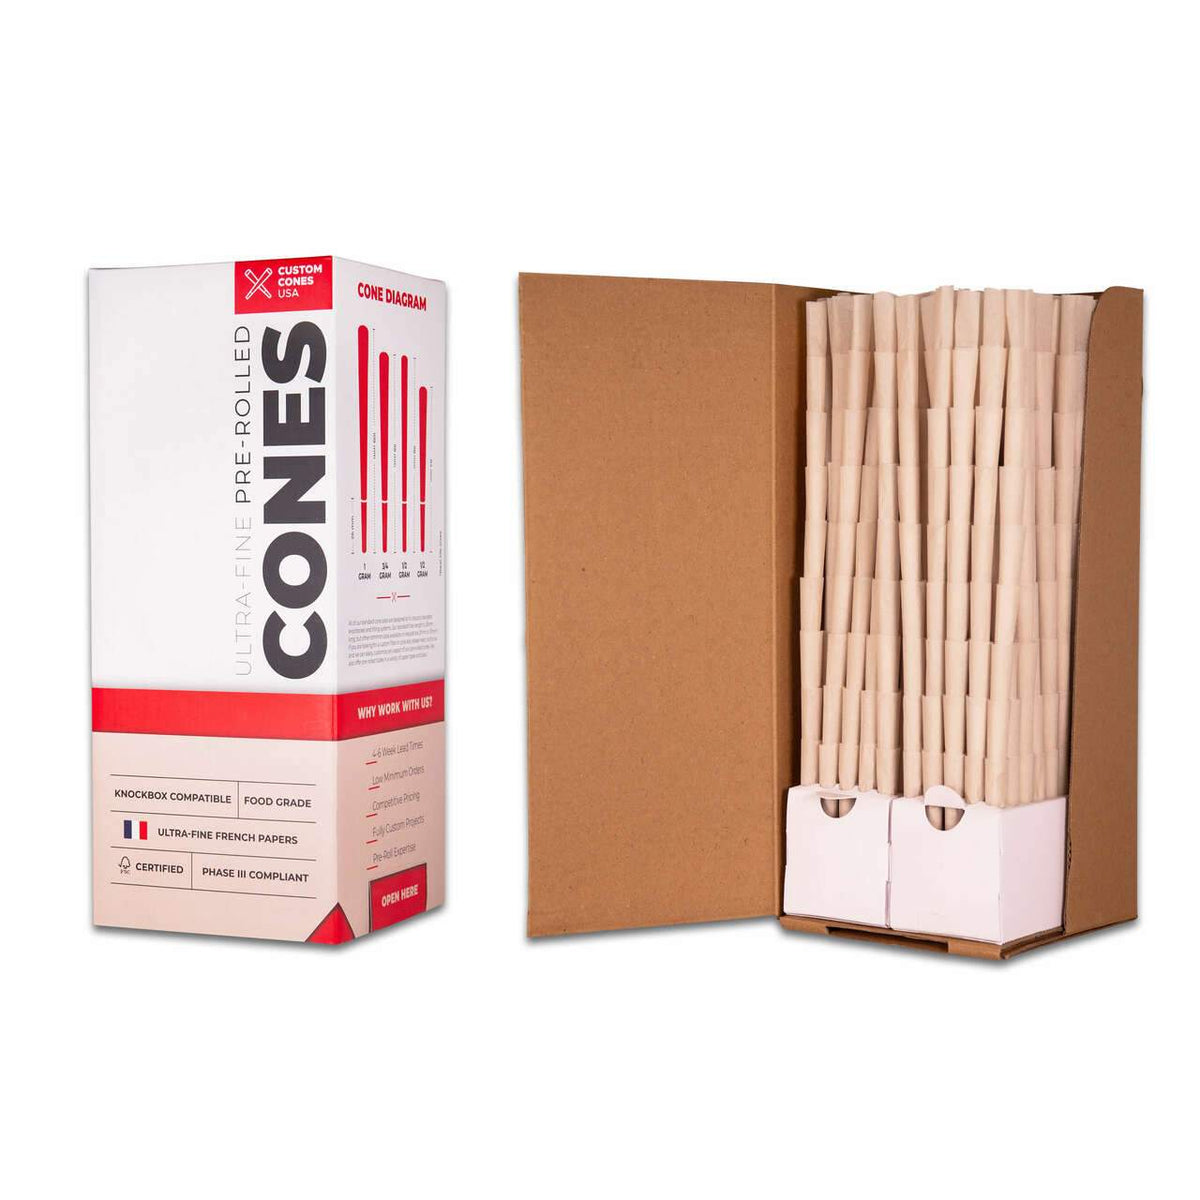 Custom Cones Custom Cones 84mm Pre-Rolled Cones - 100% Organic Hemp Paper [900 Cones per Box]